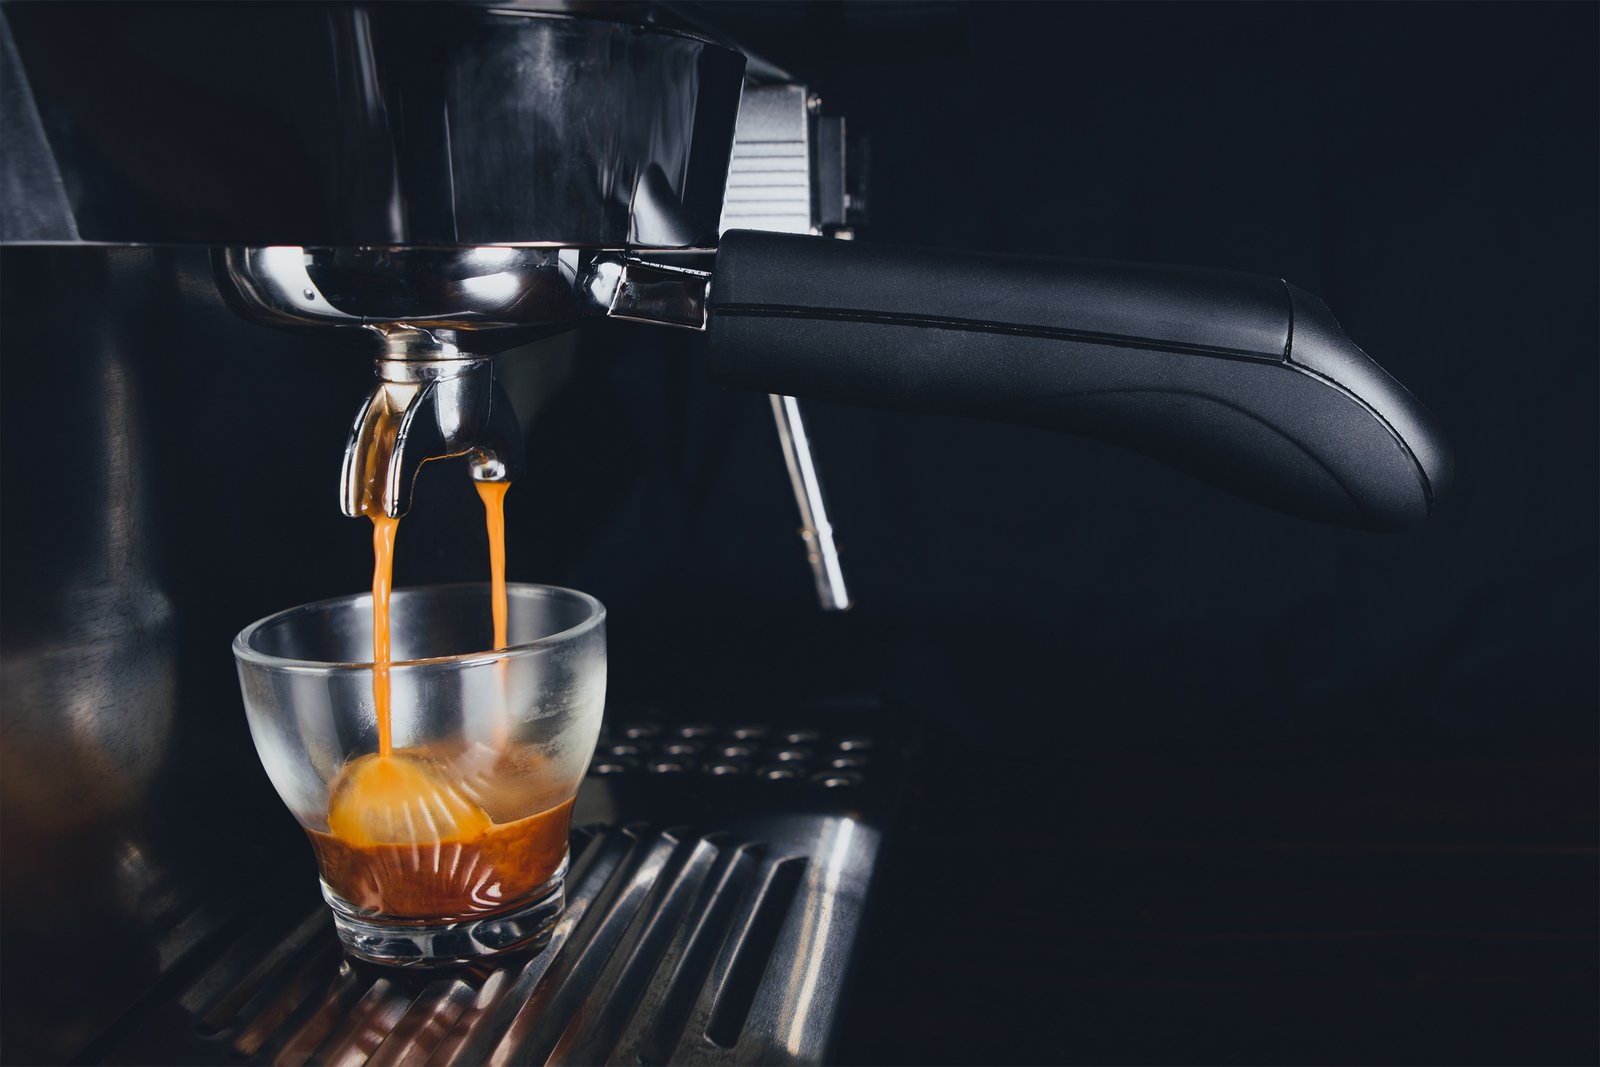 How to make an espresso shot